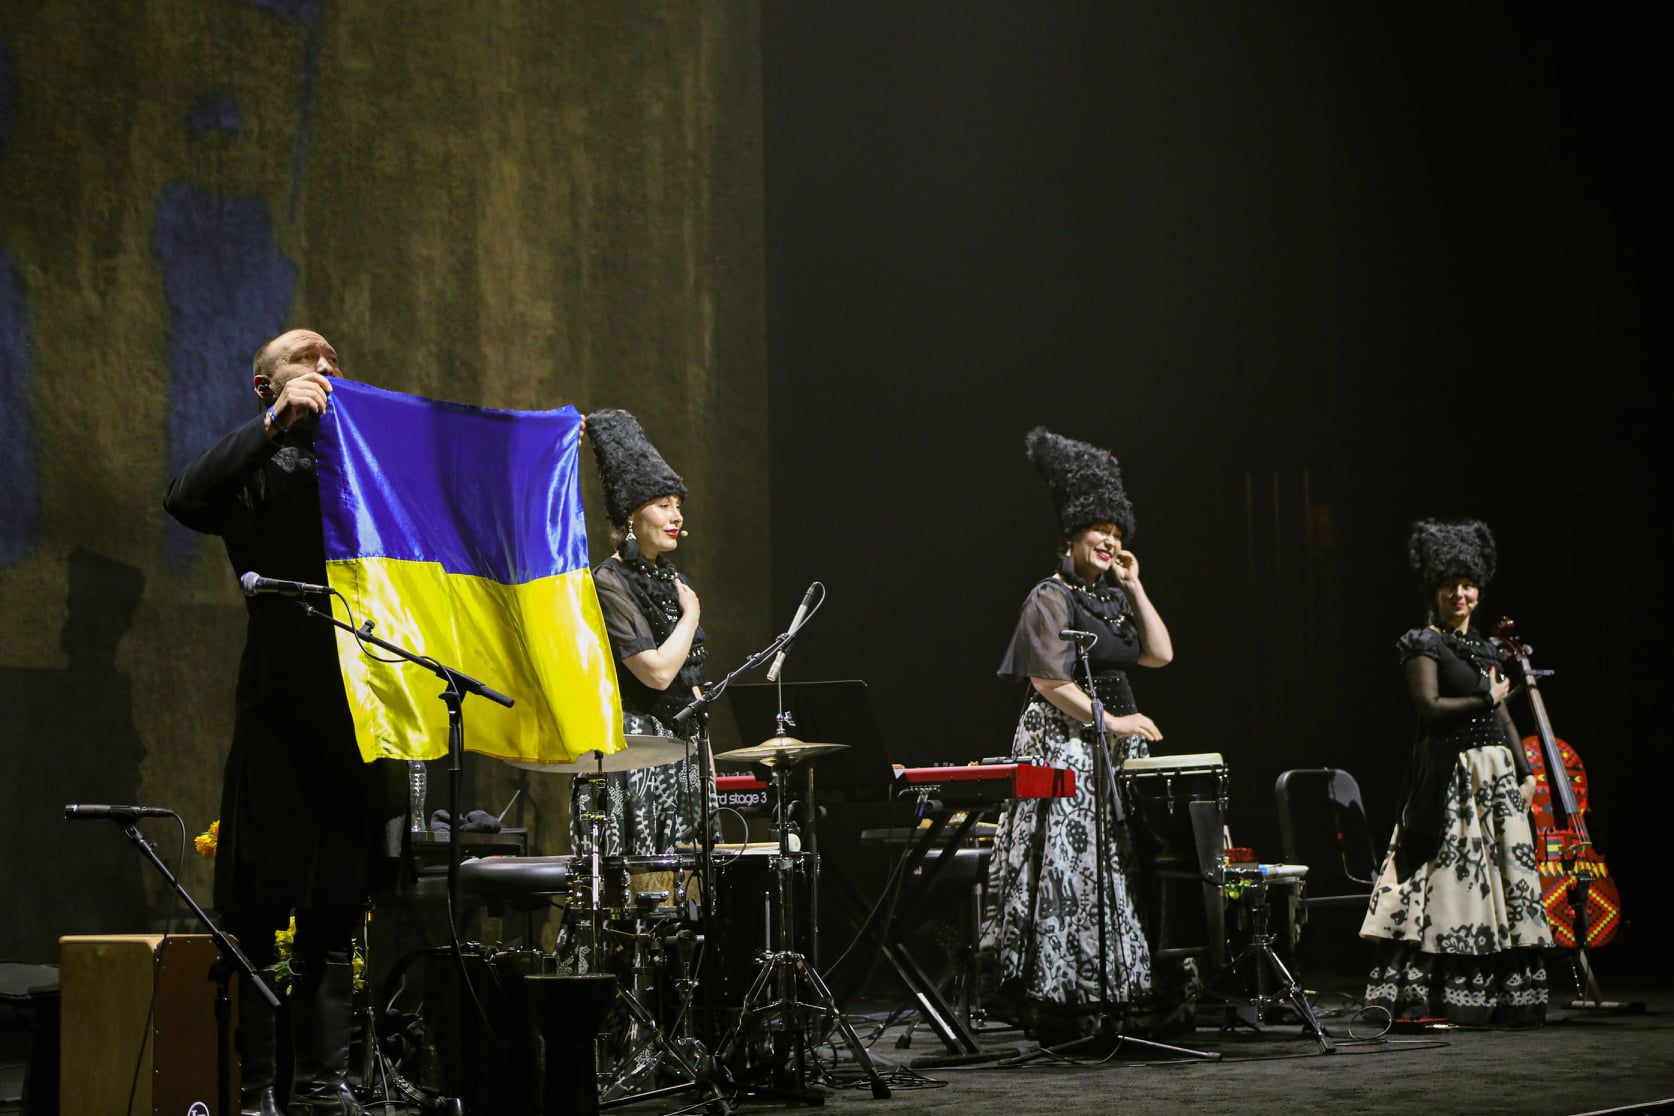 Гурт ДахаБраха зібрав у турі в США $100 тисяч для України